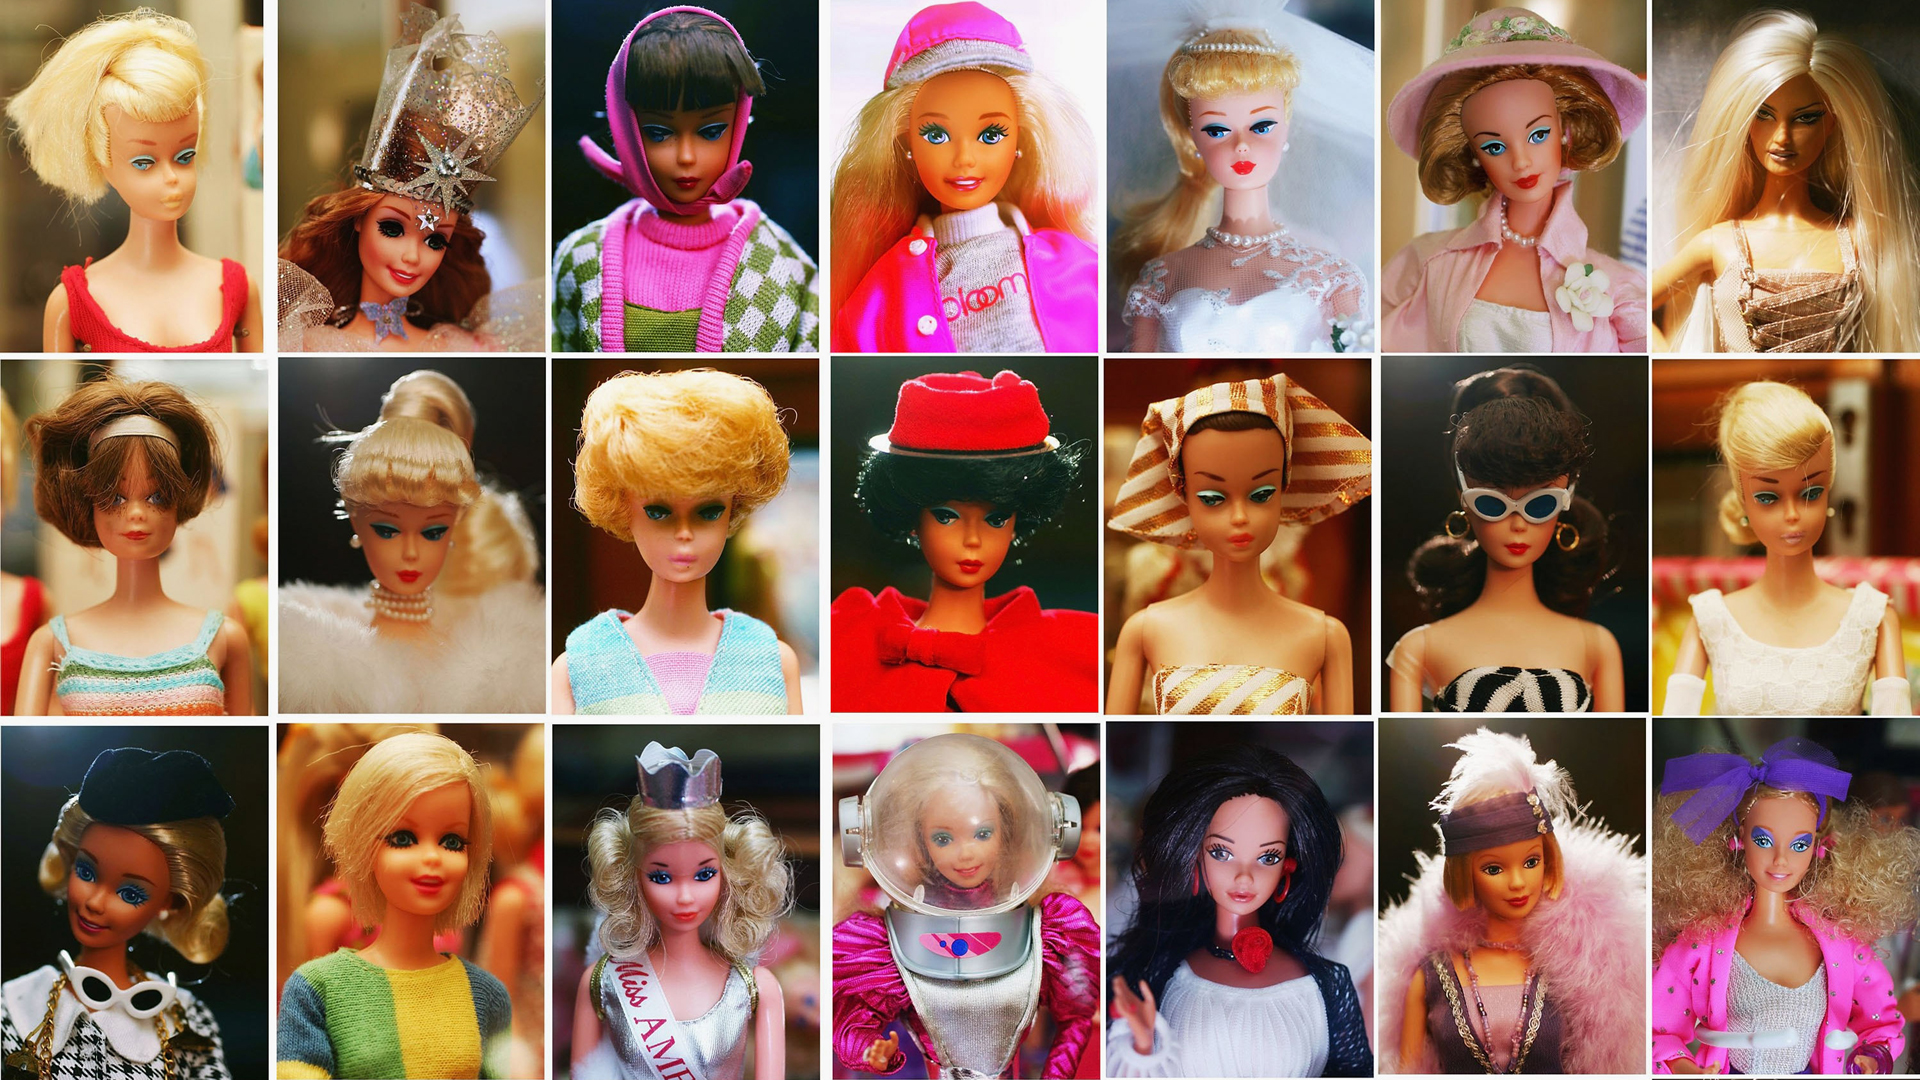 Descubra qual filme da Barbie é perfeito para você, segundo a astrologia